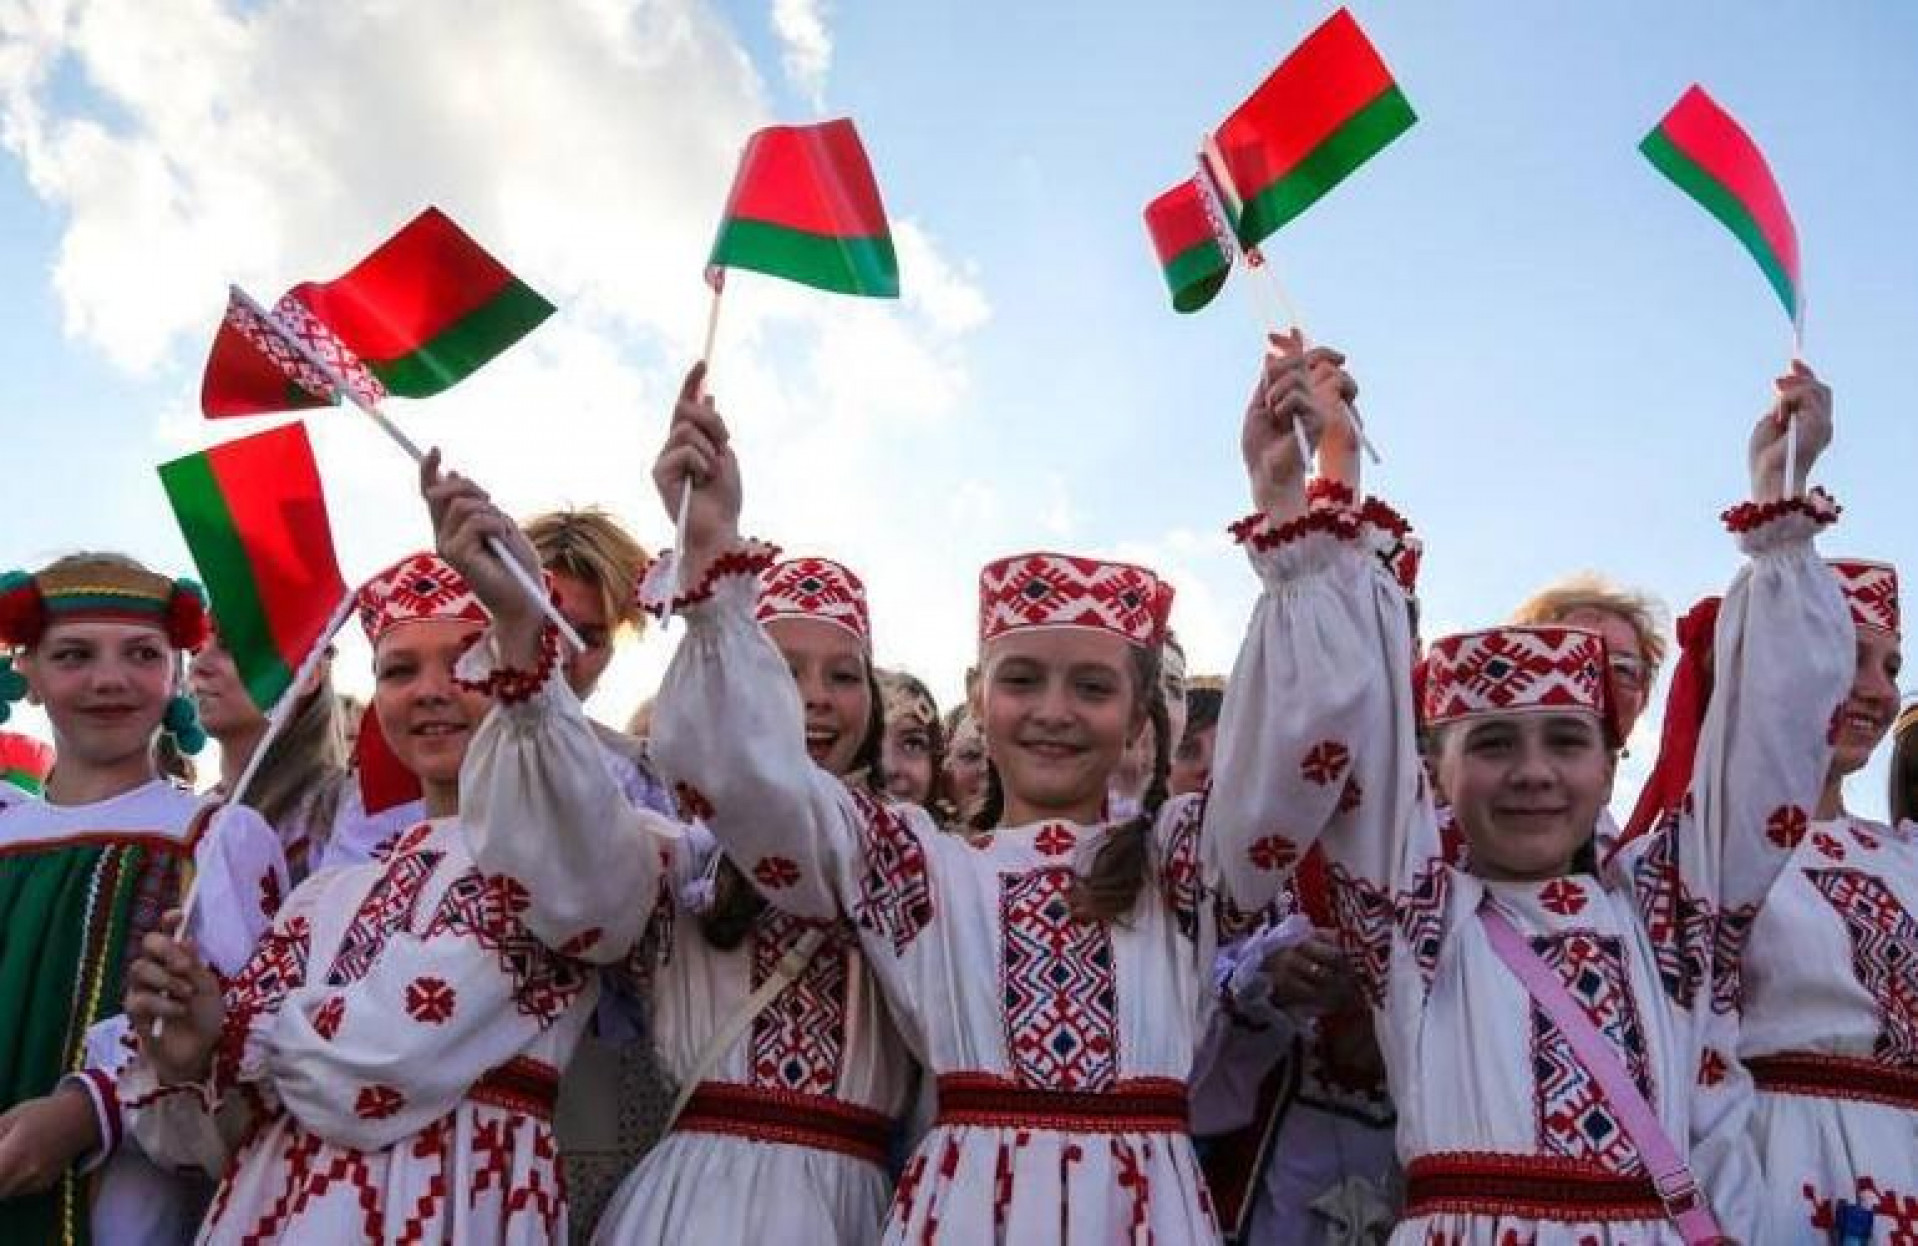 Какого жить в белоруссии